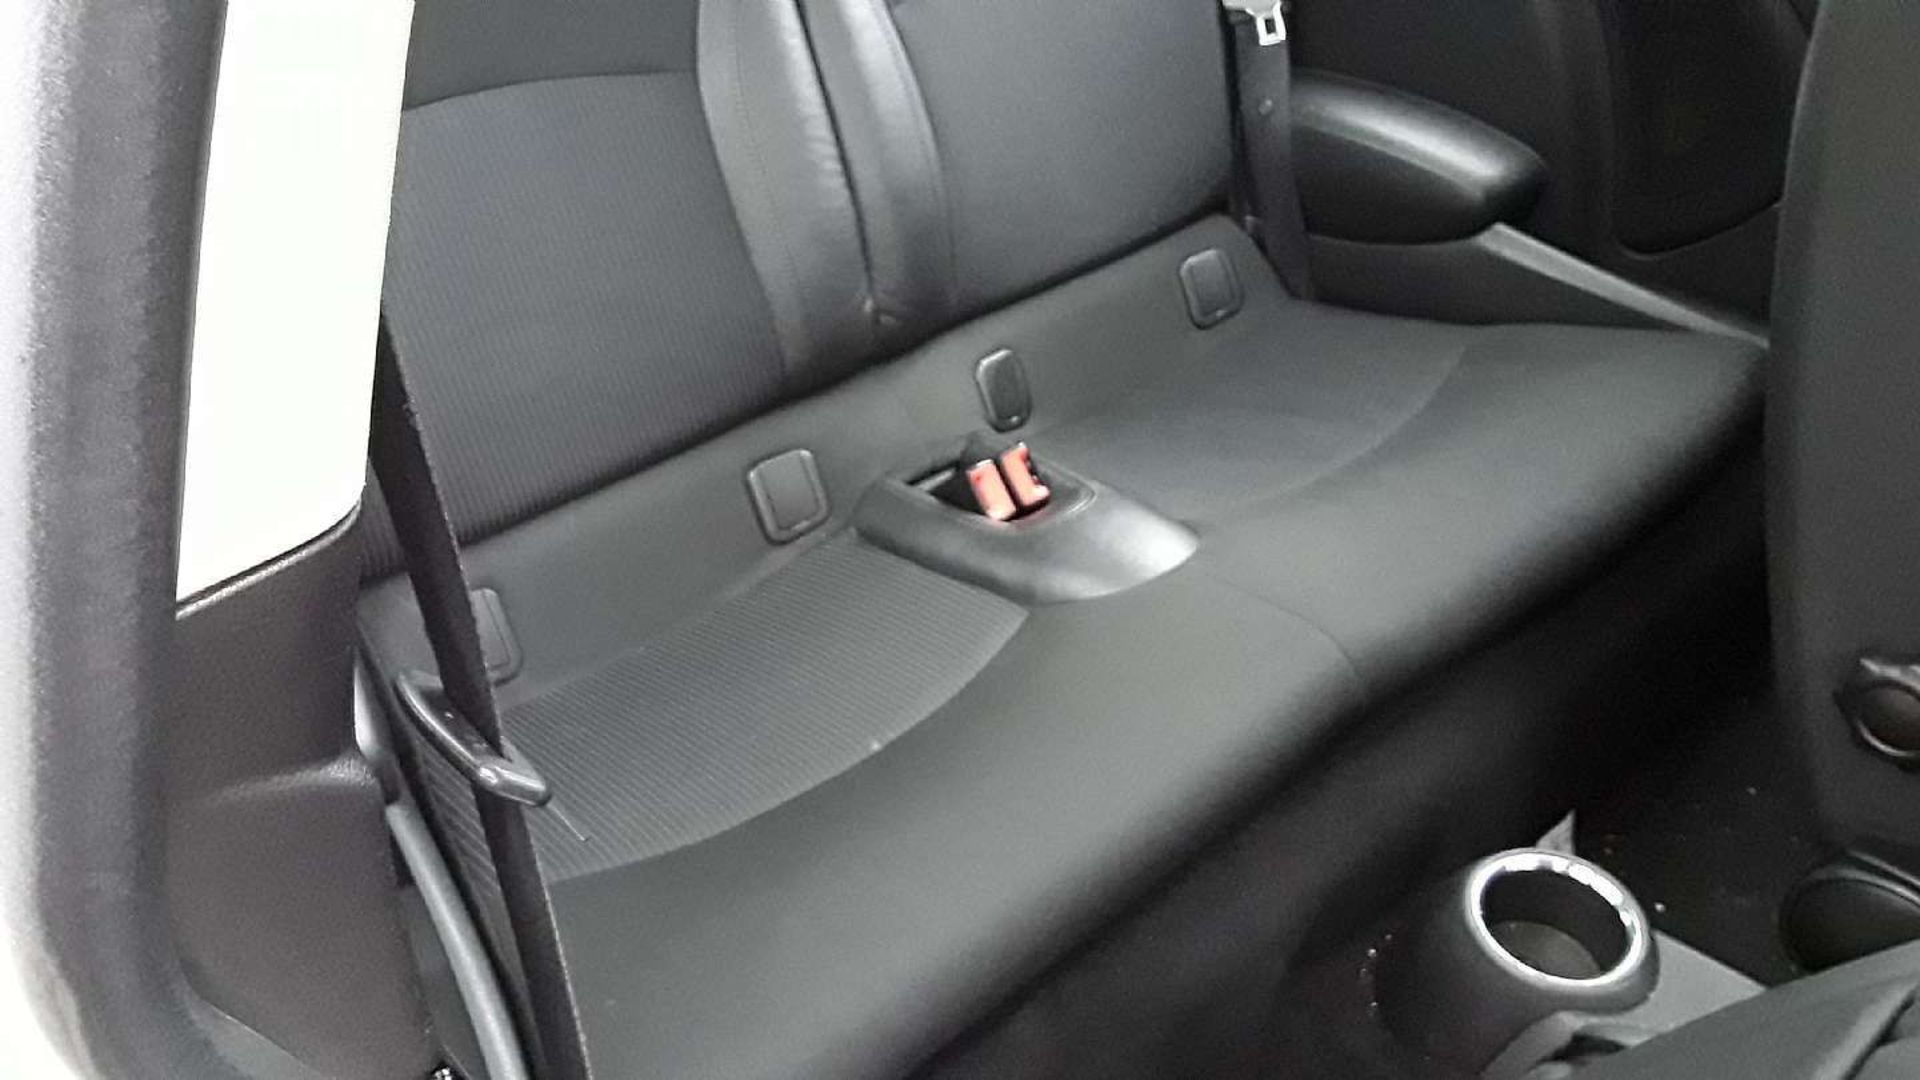 2011 Mini Cooper 1.6 S 3 Door Hatchback - 82,530 miles - 2 keys - Image 21 of 23